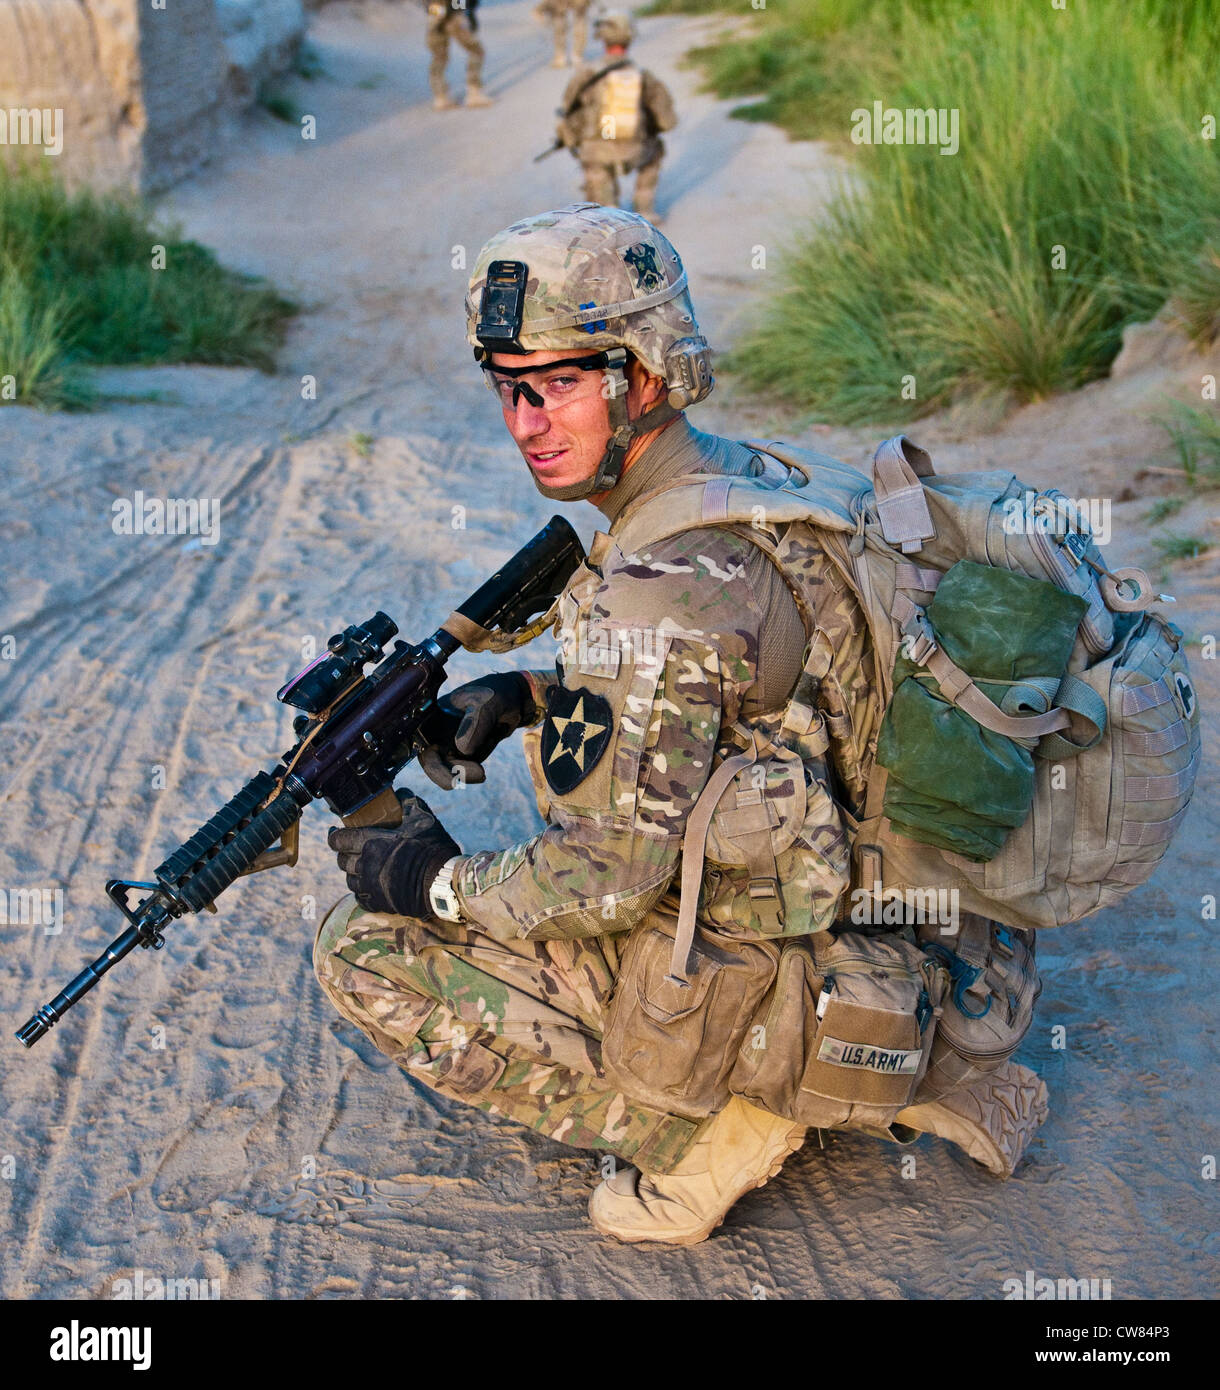 Spc. Blaine Templeton der Zugmediziner mit dem 2. Zug, Apache Company, 1. Bataillon, 23. Infanterie-Regiment, knielte während einer Fußpatrouille in einem kleinen Dorf im Süden Afghanistans, 1. August 2012. Stockfoto